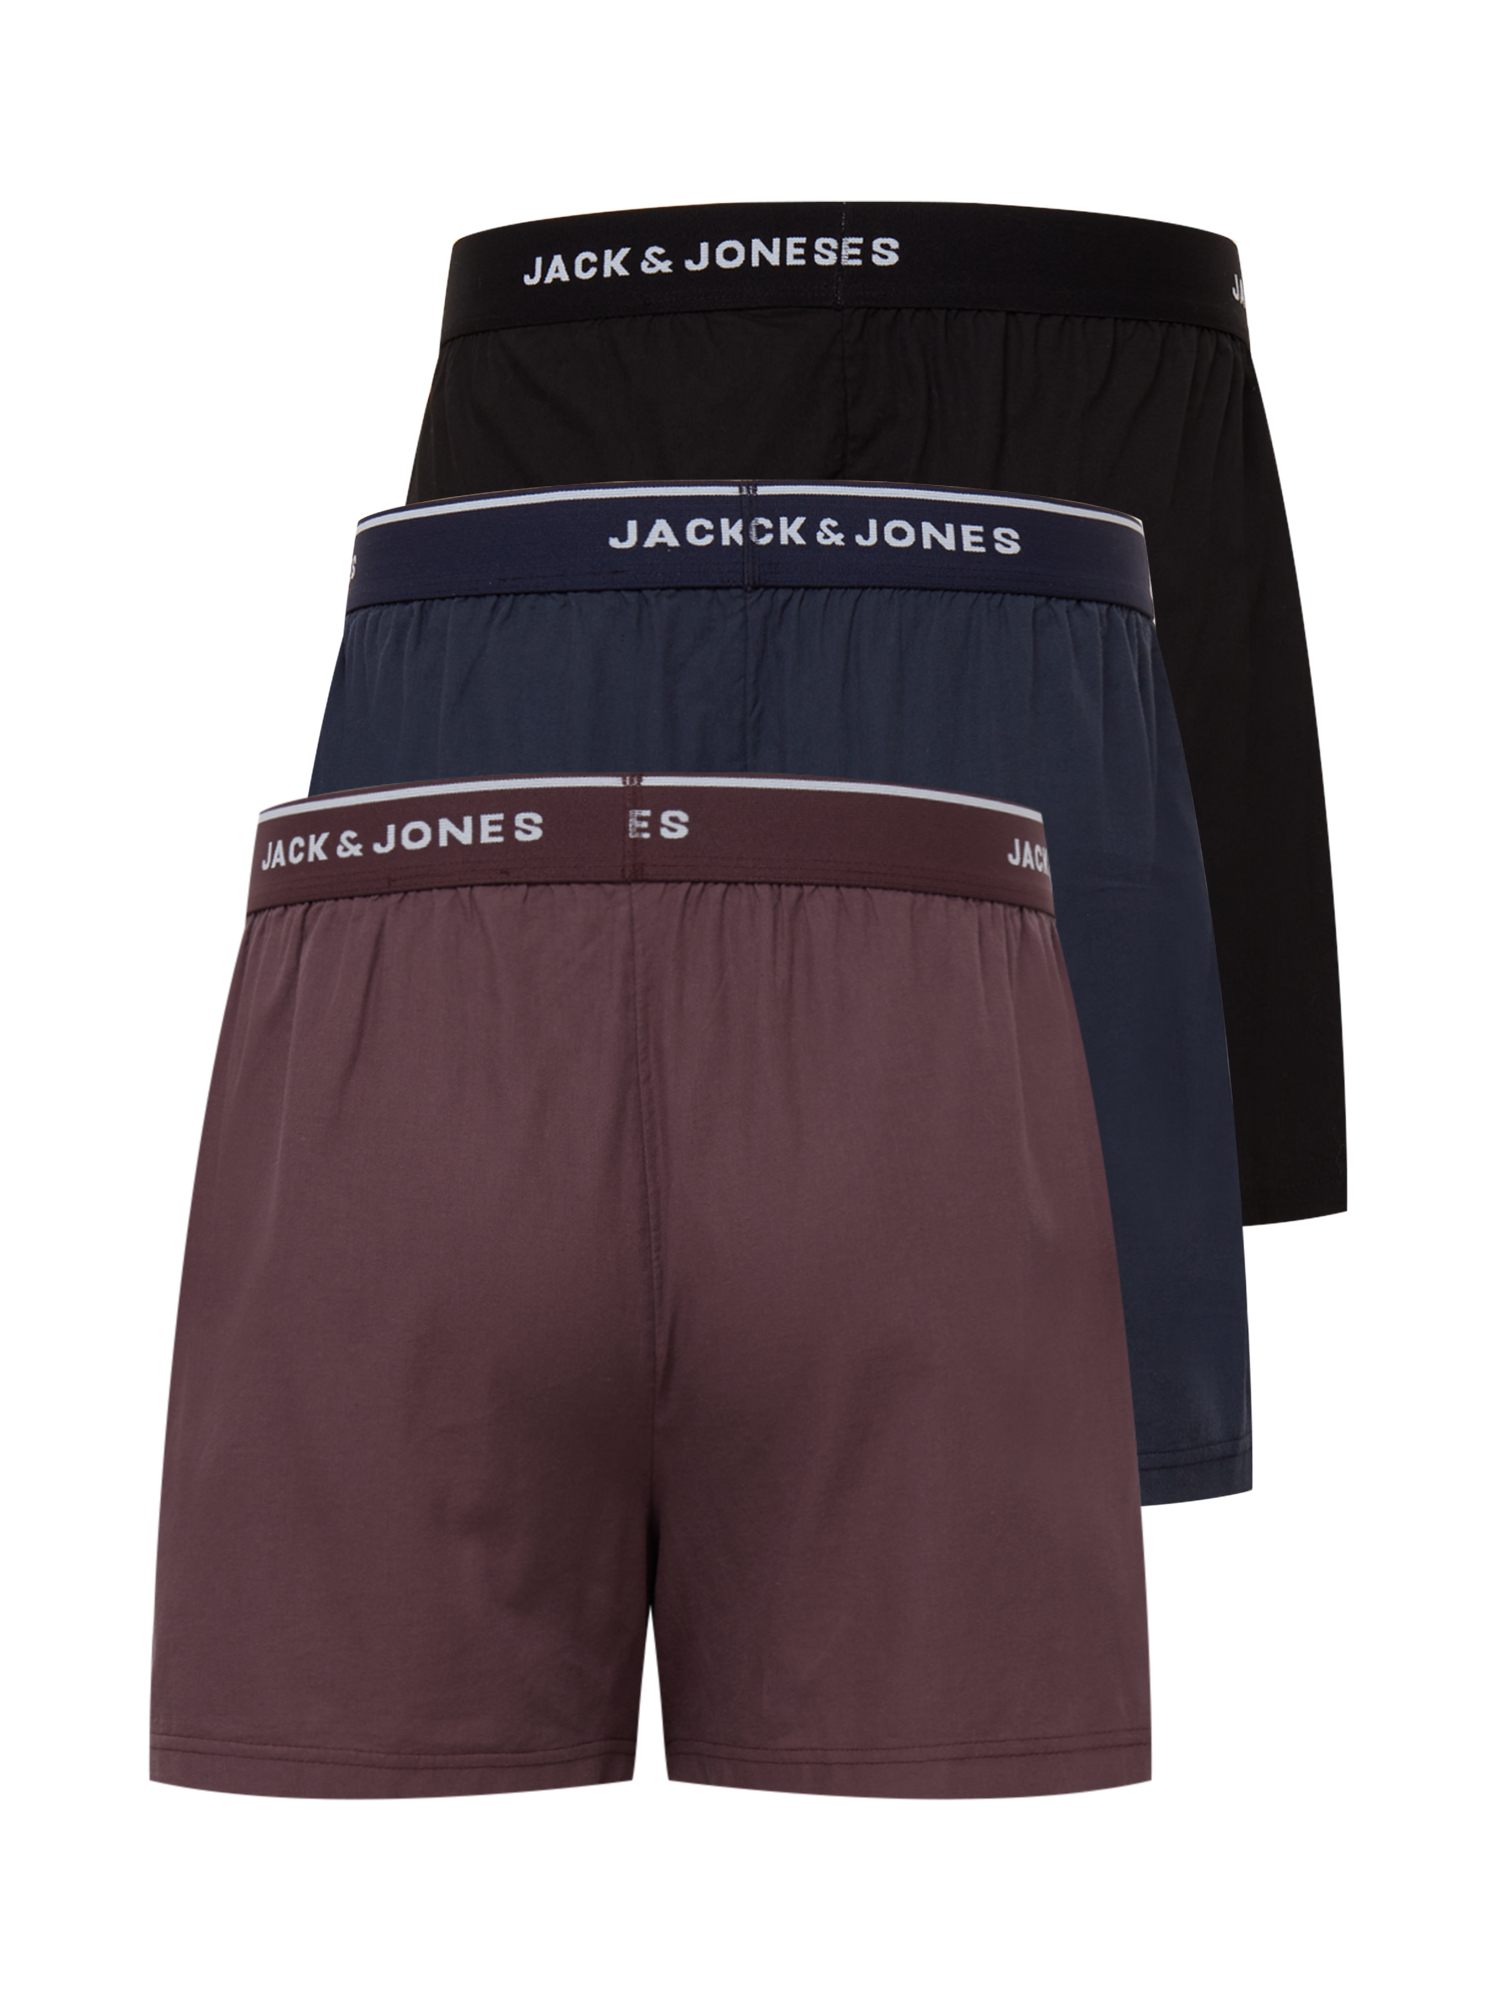 Odzież Mężczyźni JACK & JONES Bokserki MICK w kolorze Granatowy, Czarny, Pastelowa Czerwieńm 